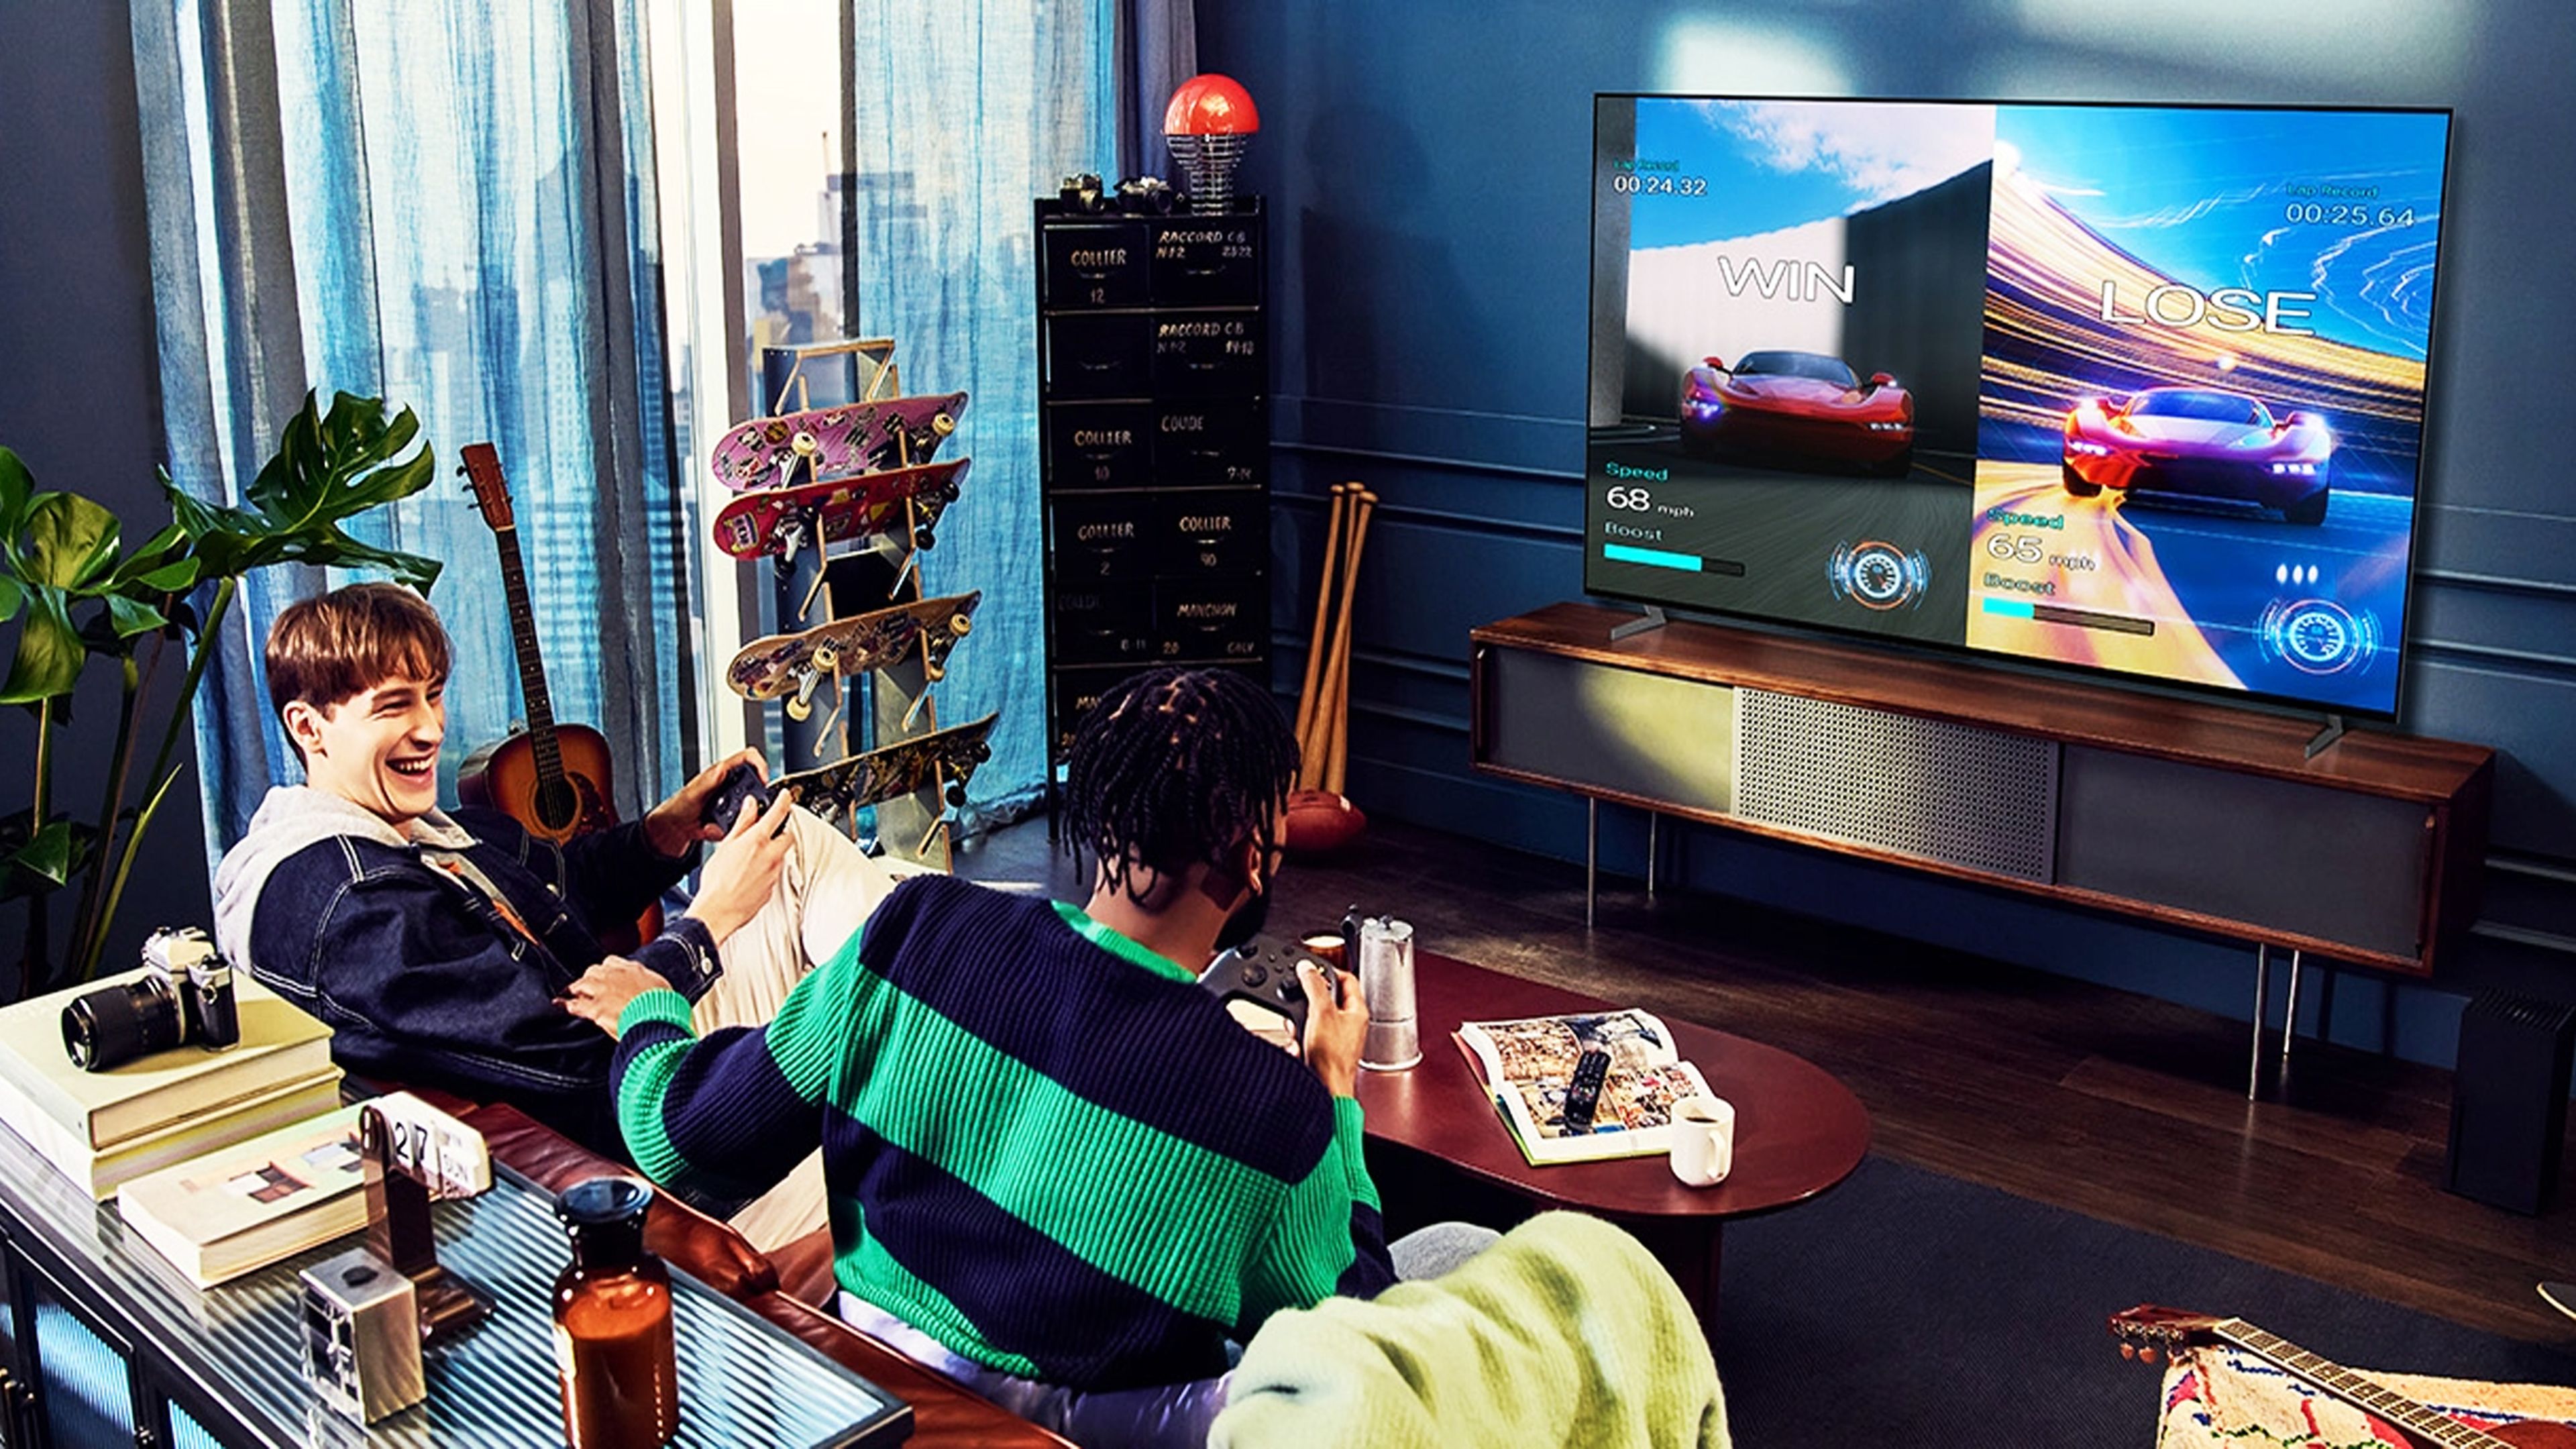 Carrefour está liquidando una TV OLED de LG 300 euros más barata, un precio  de récord